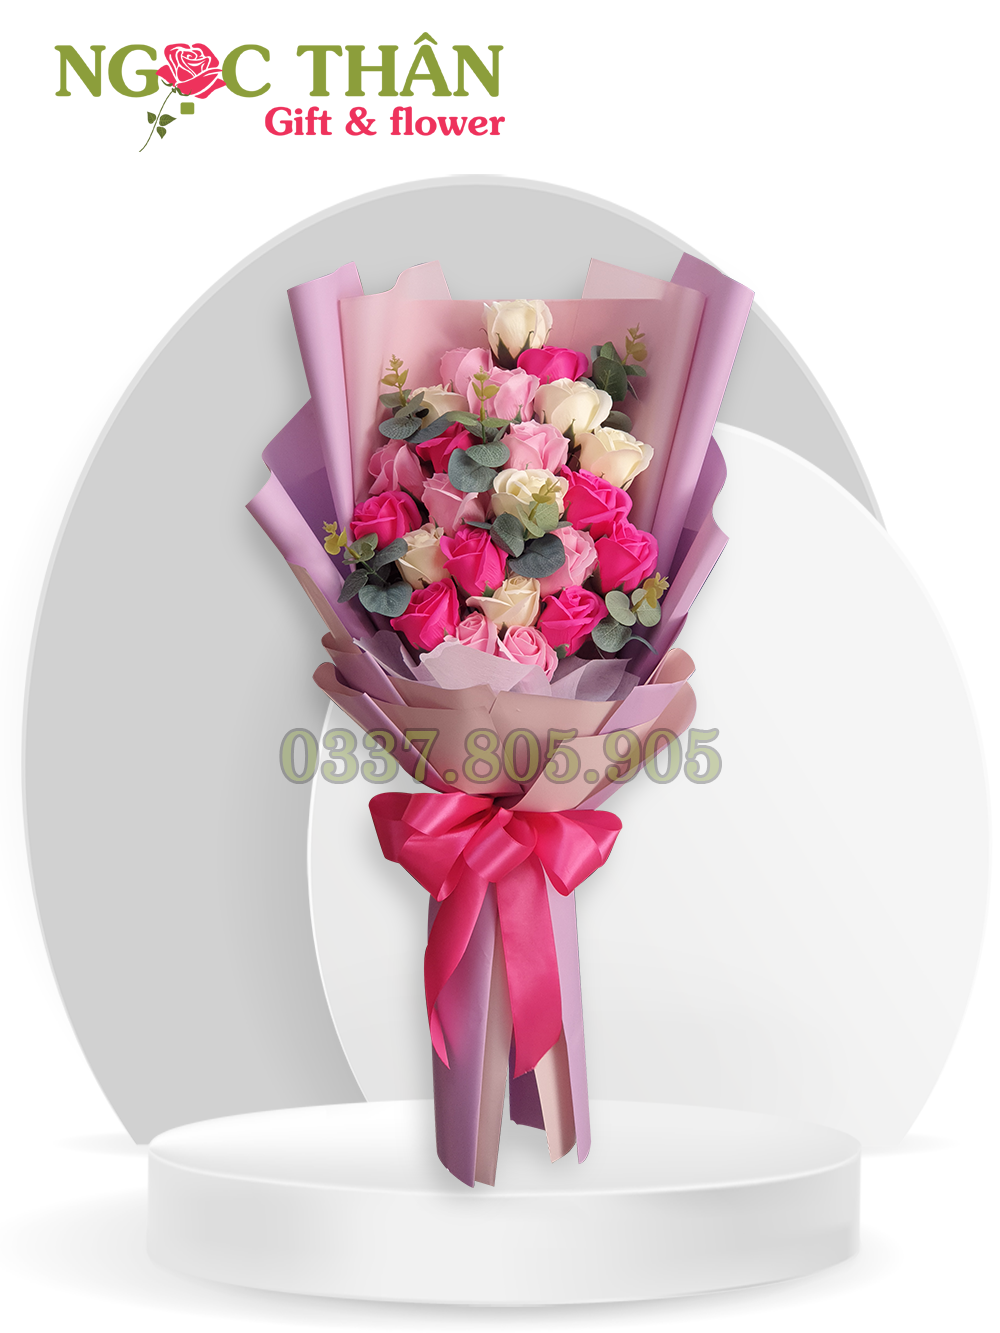 Hoa tặng sinh nhật size nhỏ 15 bông  có nhiều màu đỏ  hồng  tím  xanh   vàng   HOA SÁP BIÊN HÒA